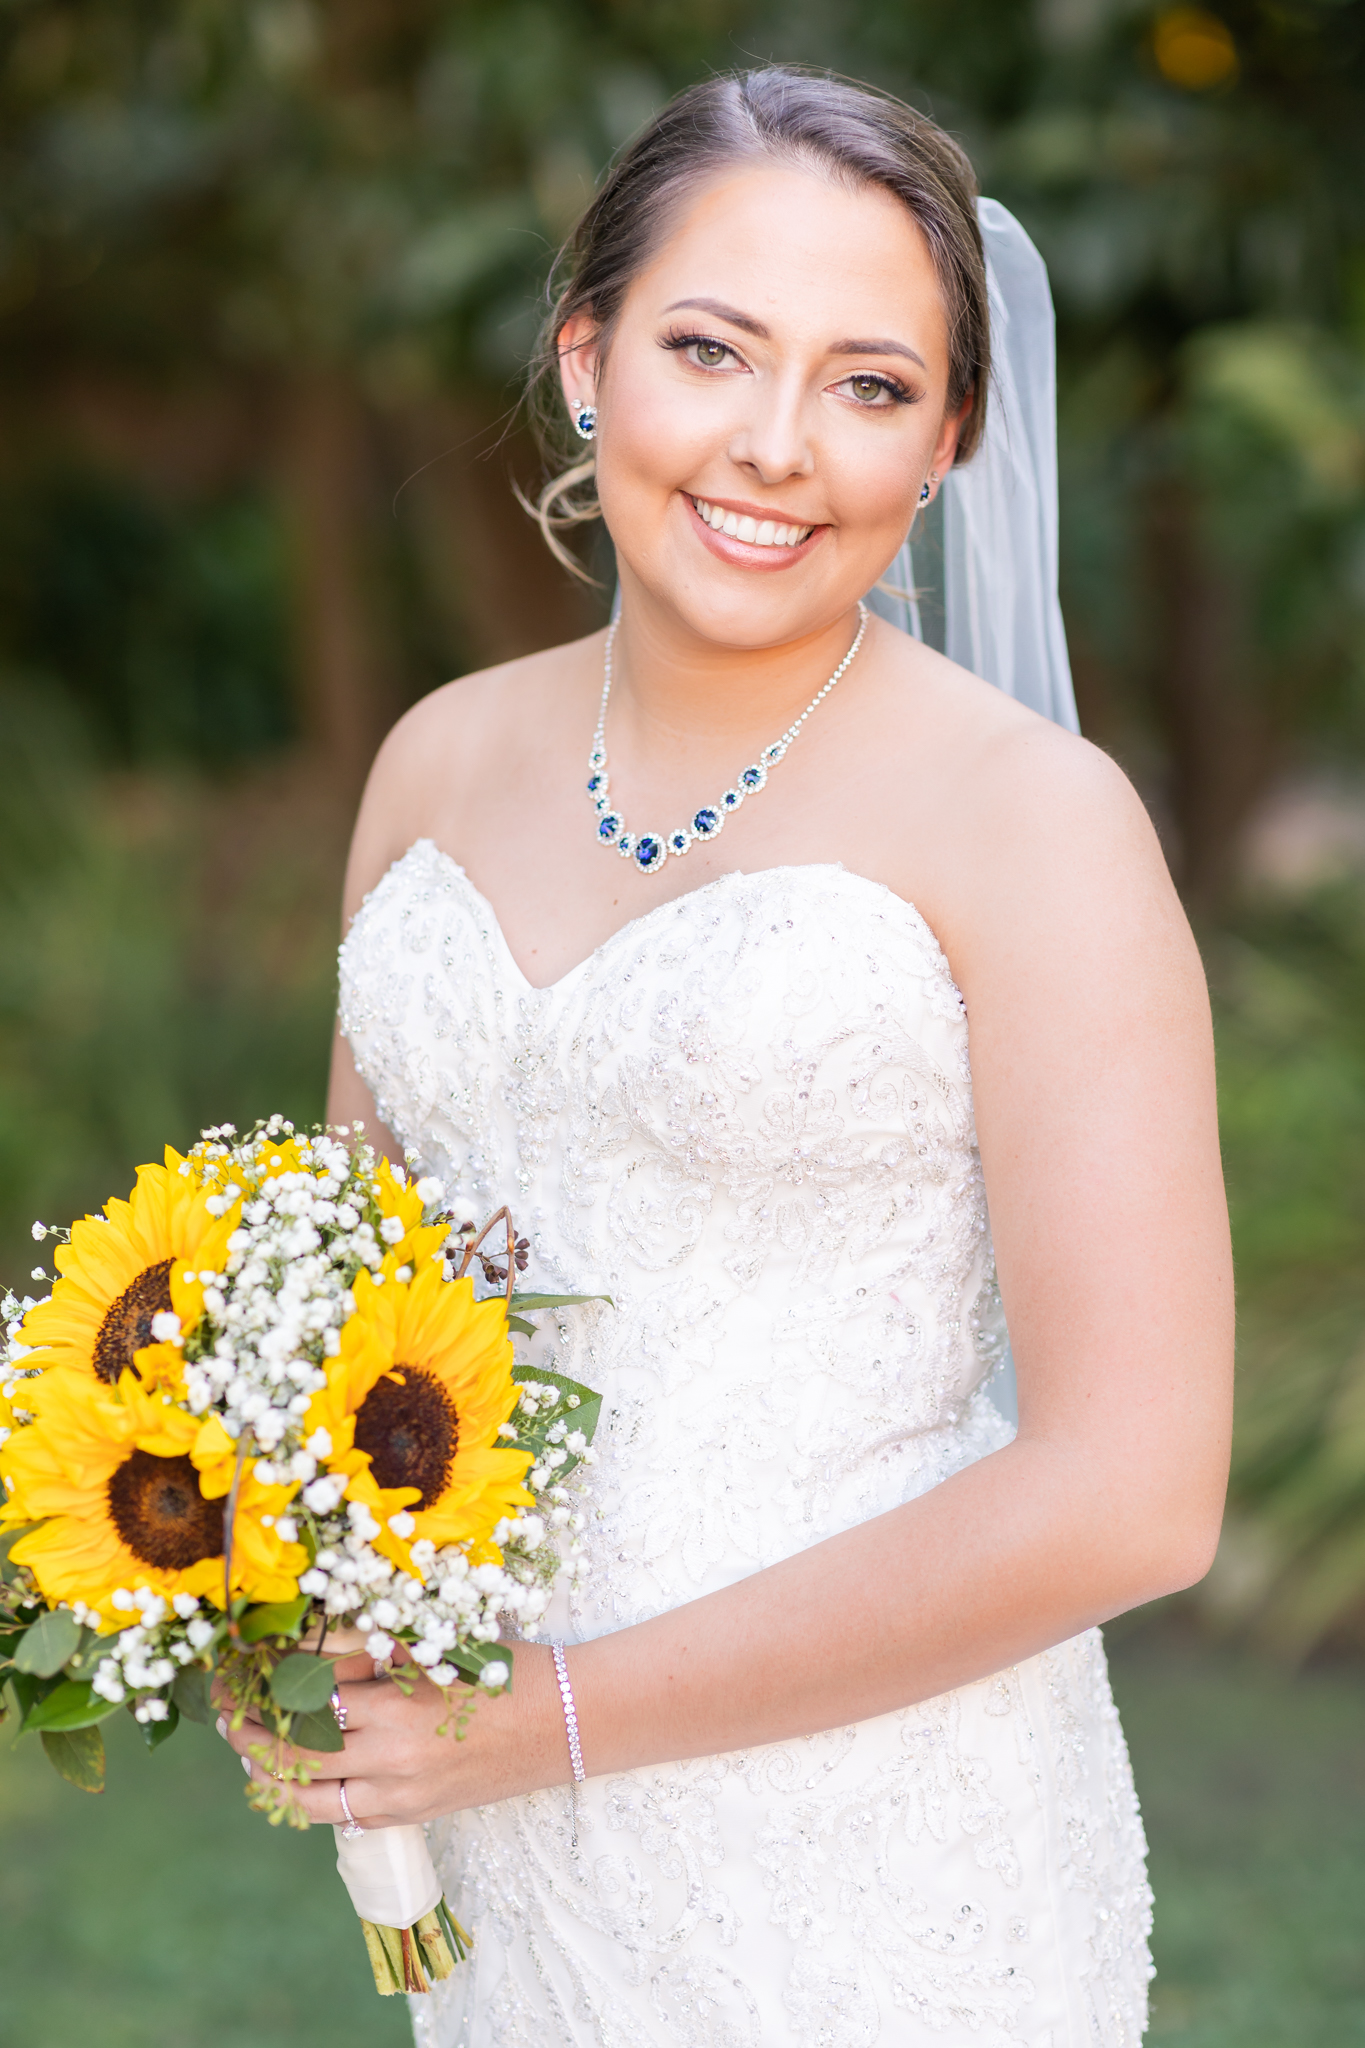 A Bridal Session in Gruene in New Braunfels, TX by Dawn Elizabeth Studios, New Braunfels Wedding Photographer